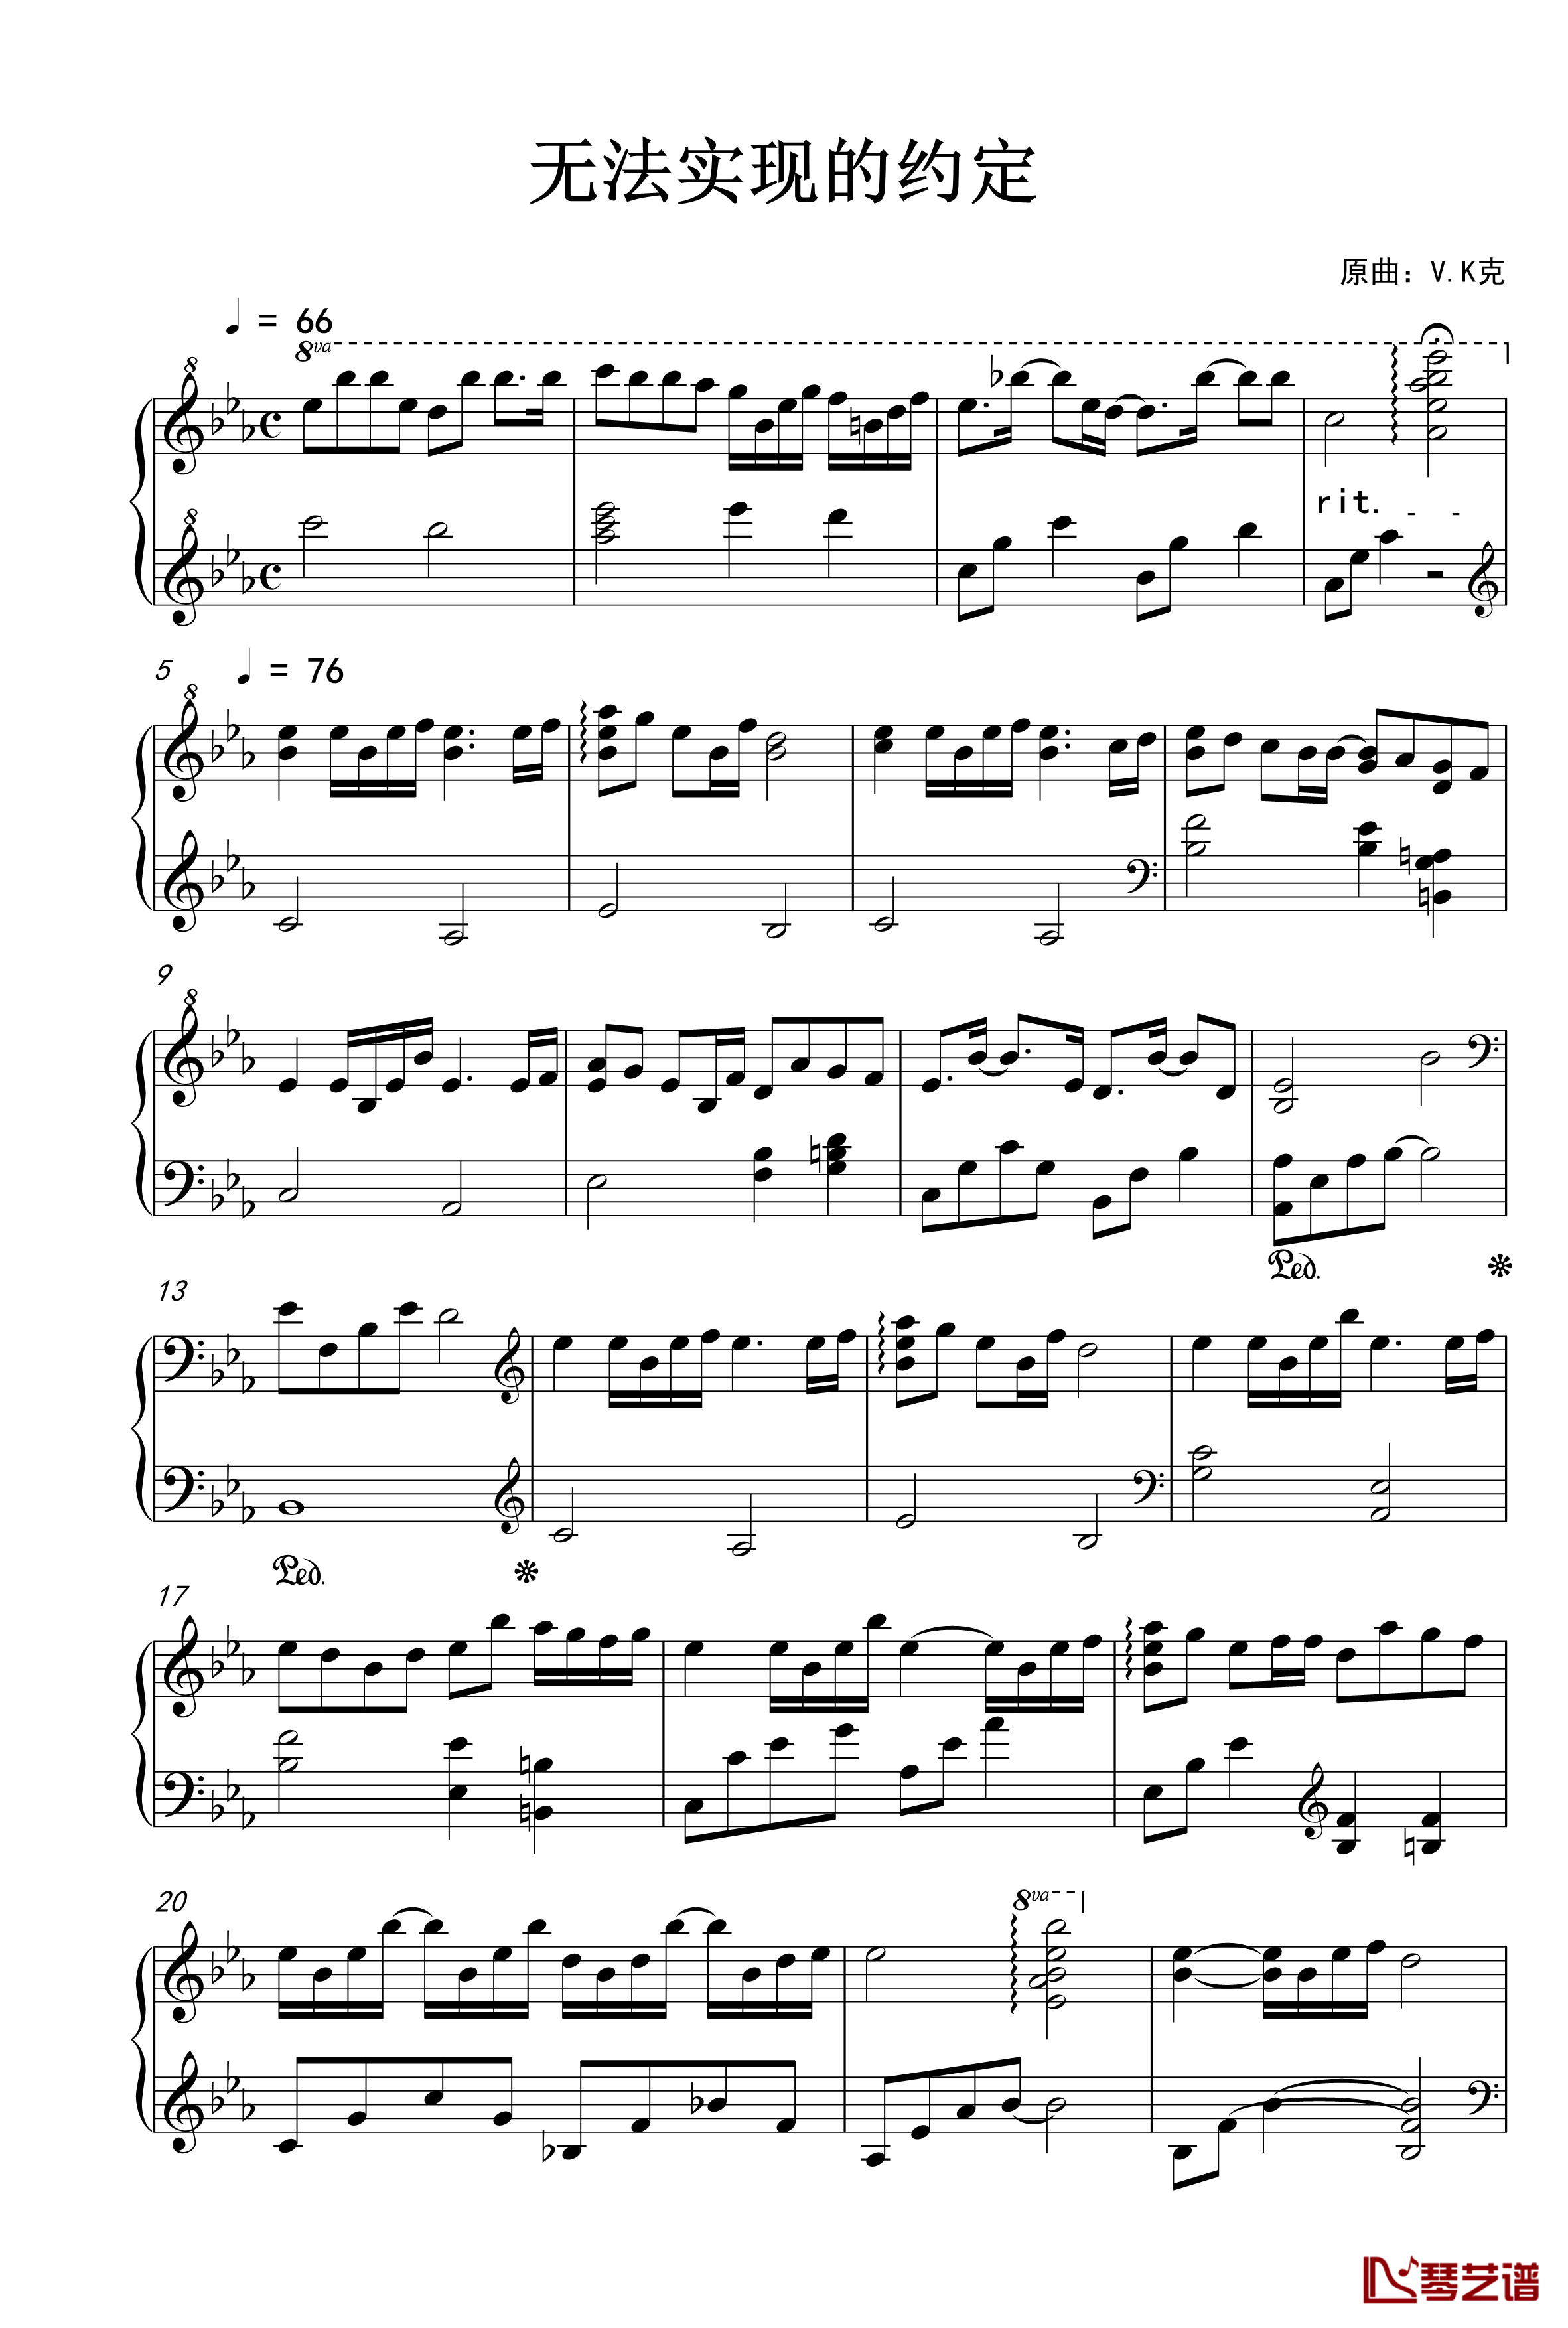 无法实现的约定钢琴谱-V.K1